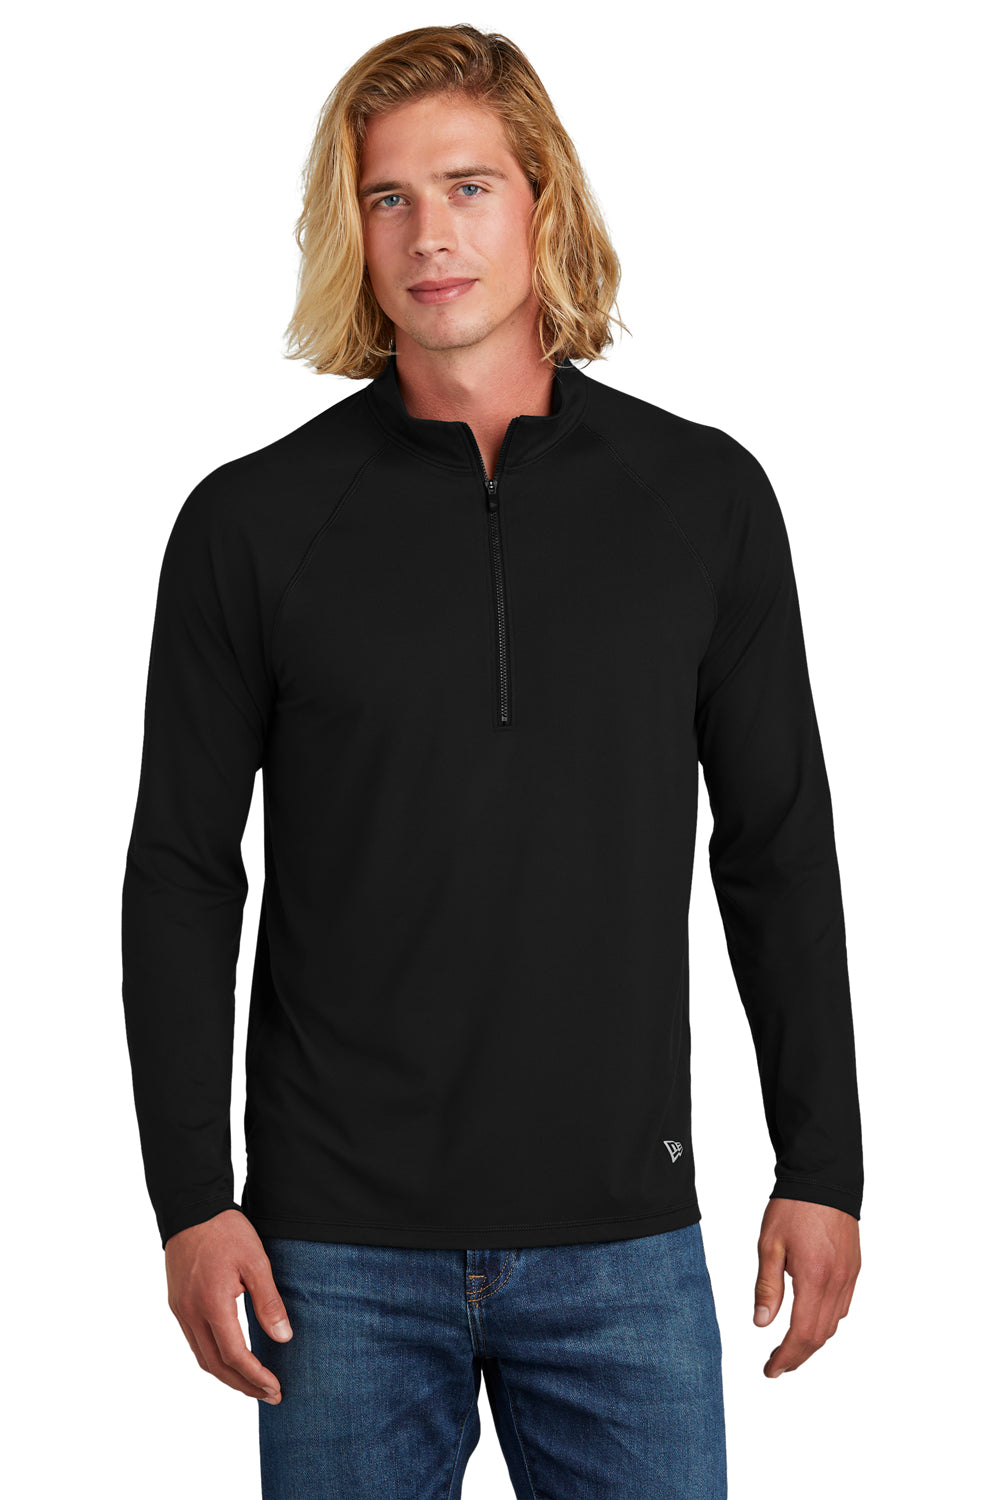 New Era Mens Power 1/4 Zip Sweatshirt Black Front